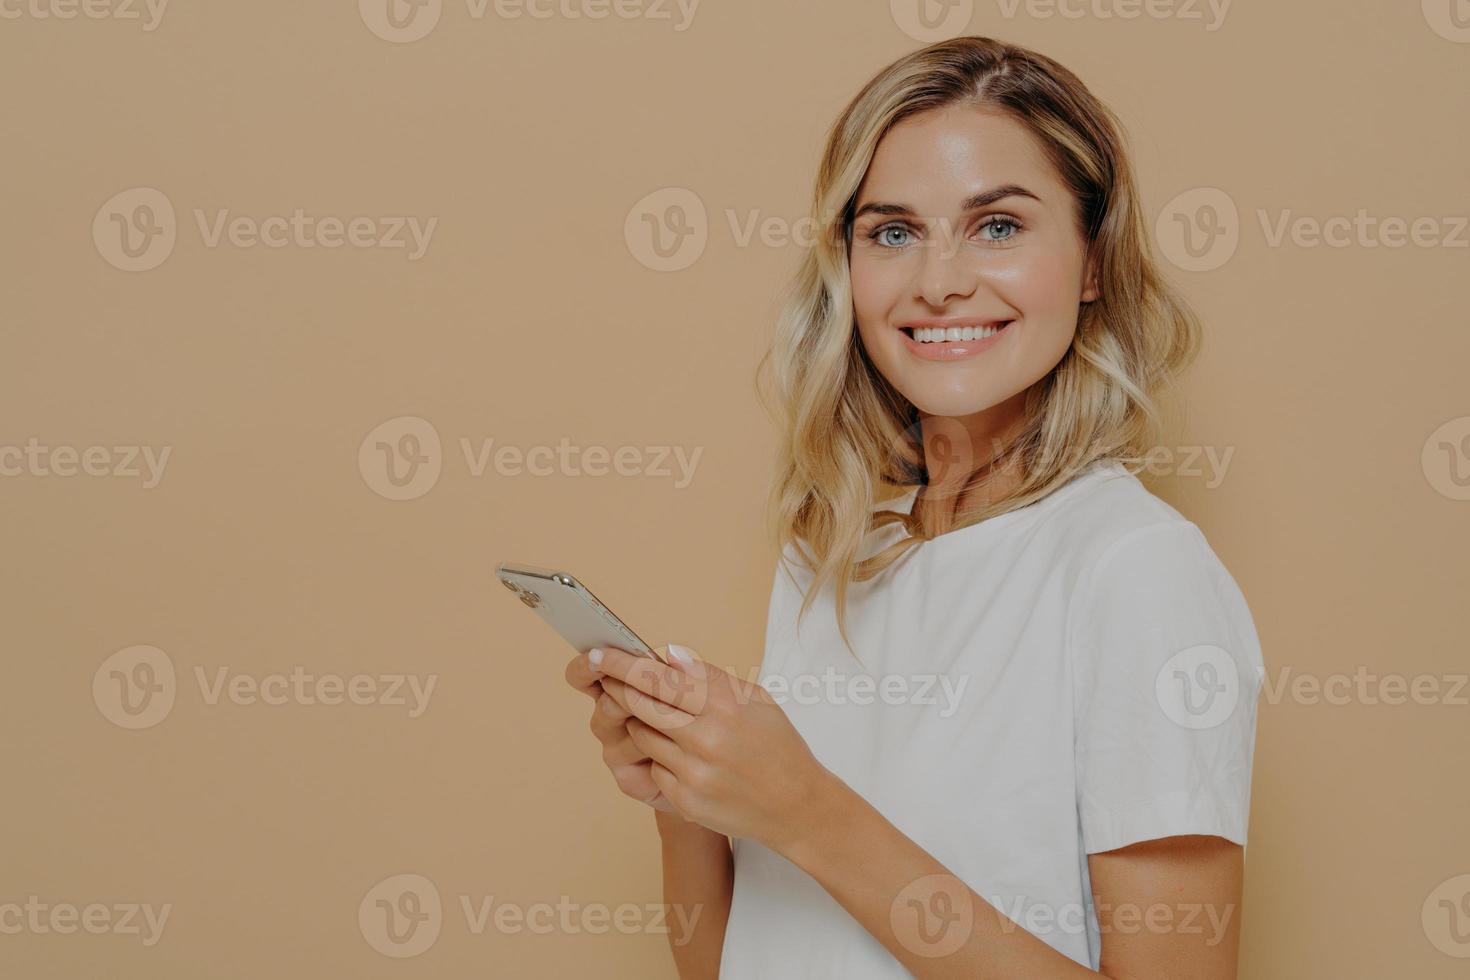 retrato de jovem alegre em camiseta branca feliz em ler boas notícias no smartphone foto